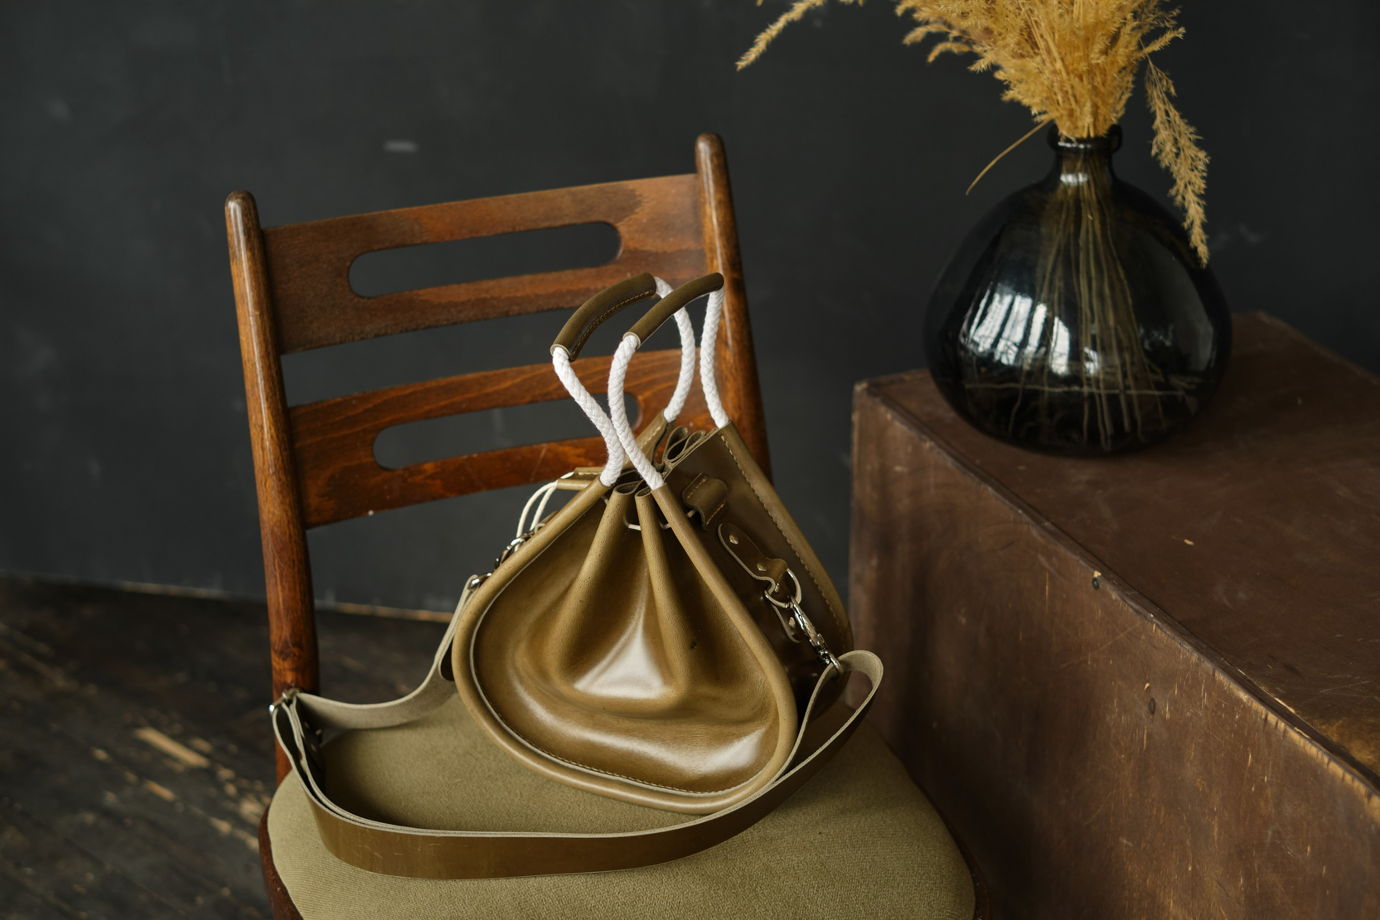 Кожаная сумка-мешок Оливковый цвет Размер S "Bucket bag"